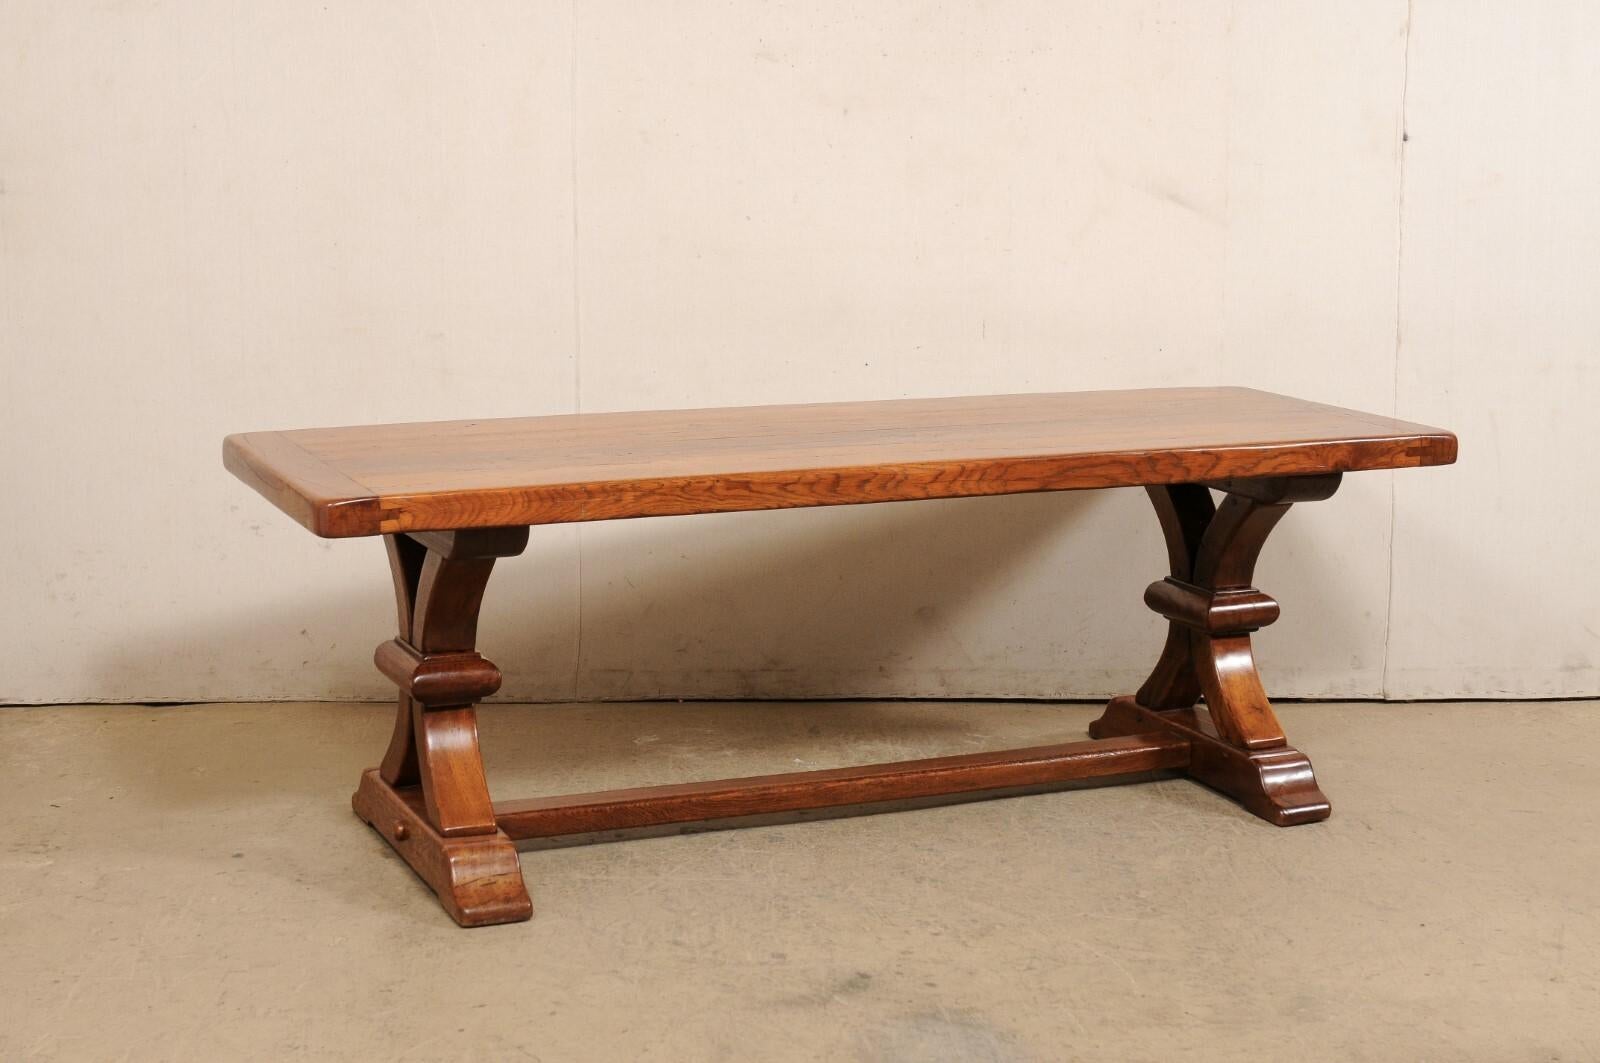 Ein französischer Esstisch mit Stützbeinen aus den 1920er-1940er Jahren. Dieser elegante antike Tisch aus Frankreich hat eine rechteckige Platte, etwas mehr als 7 Fuß in der Länge, die auf einem Paar wunderschön geschnitzten Beinen im Bocksstil